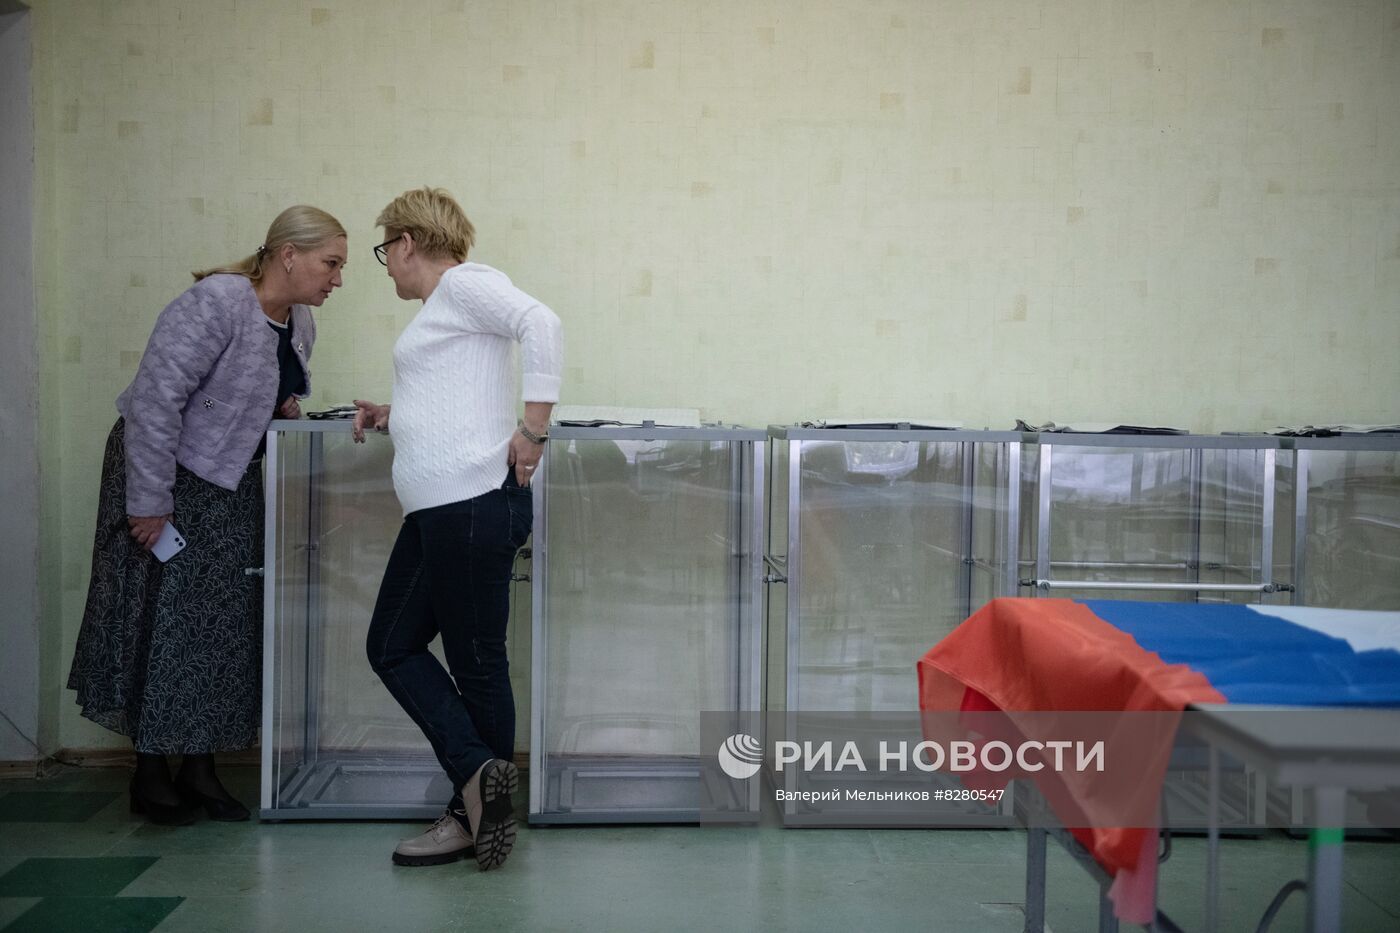 Подготовка избирательных участков в ЛНР и ДНР к референдумам